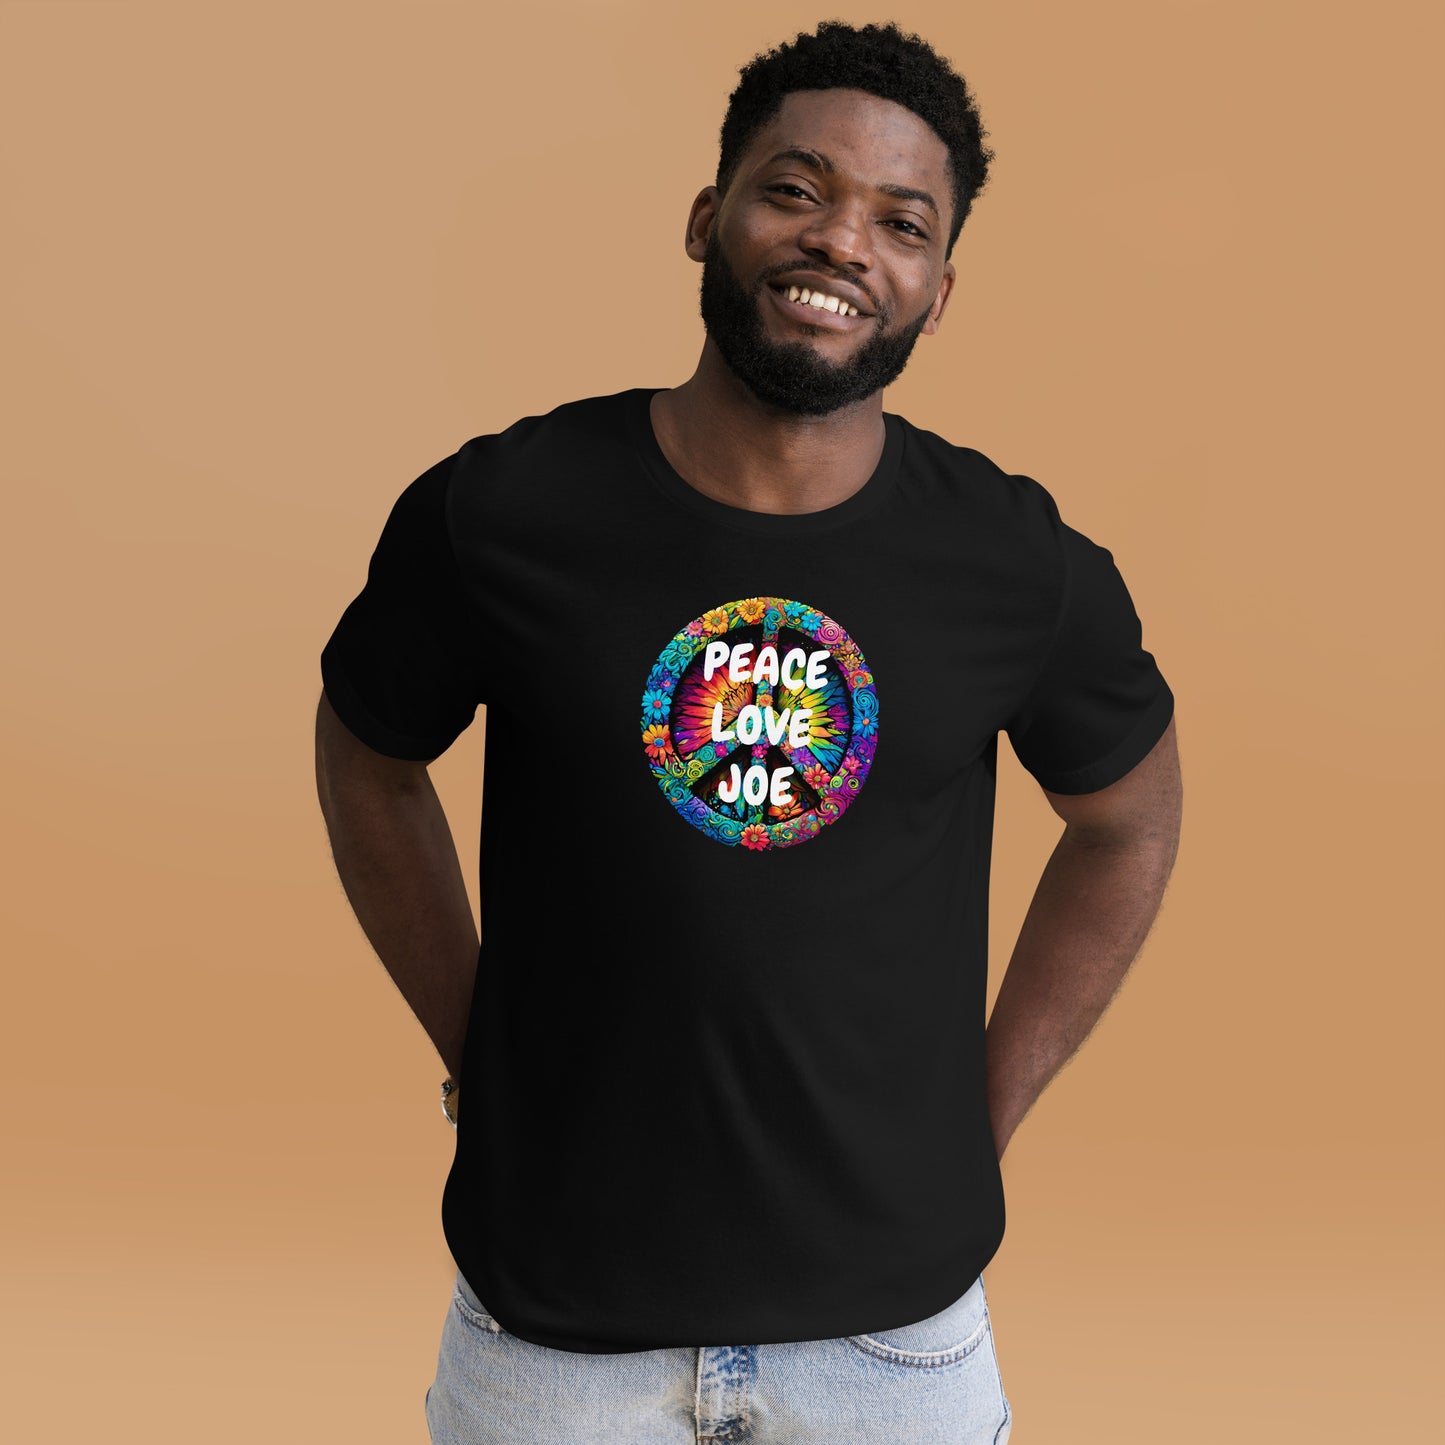 PEACE & LOVE JOE Unisex t-shirt